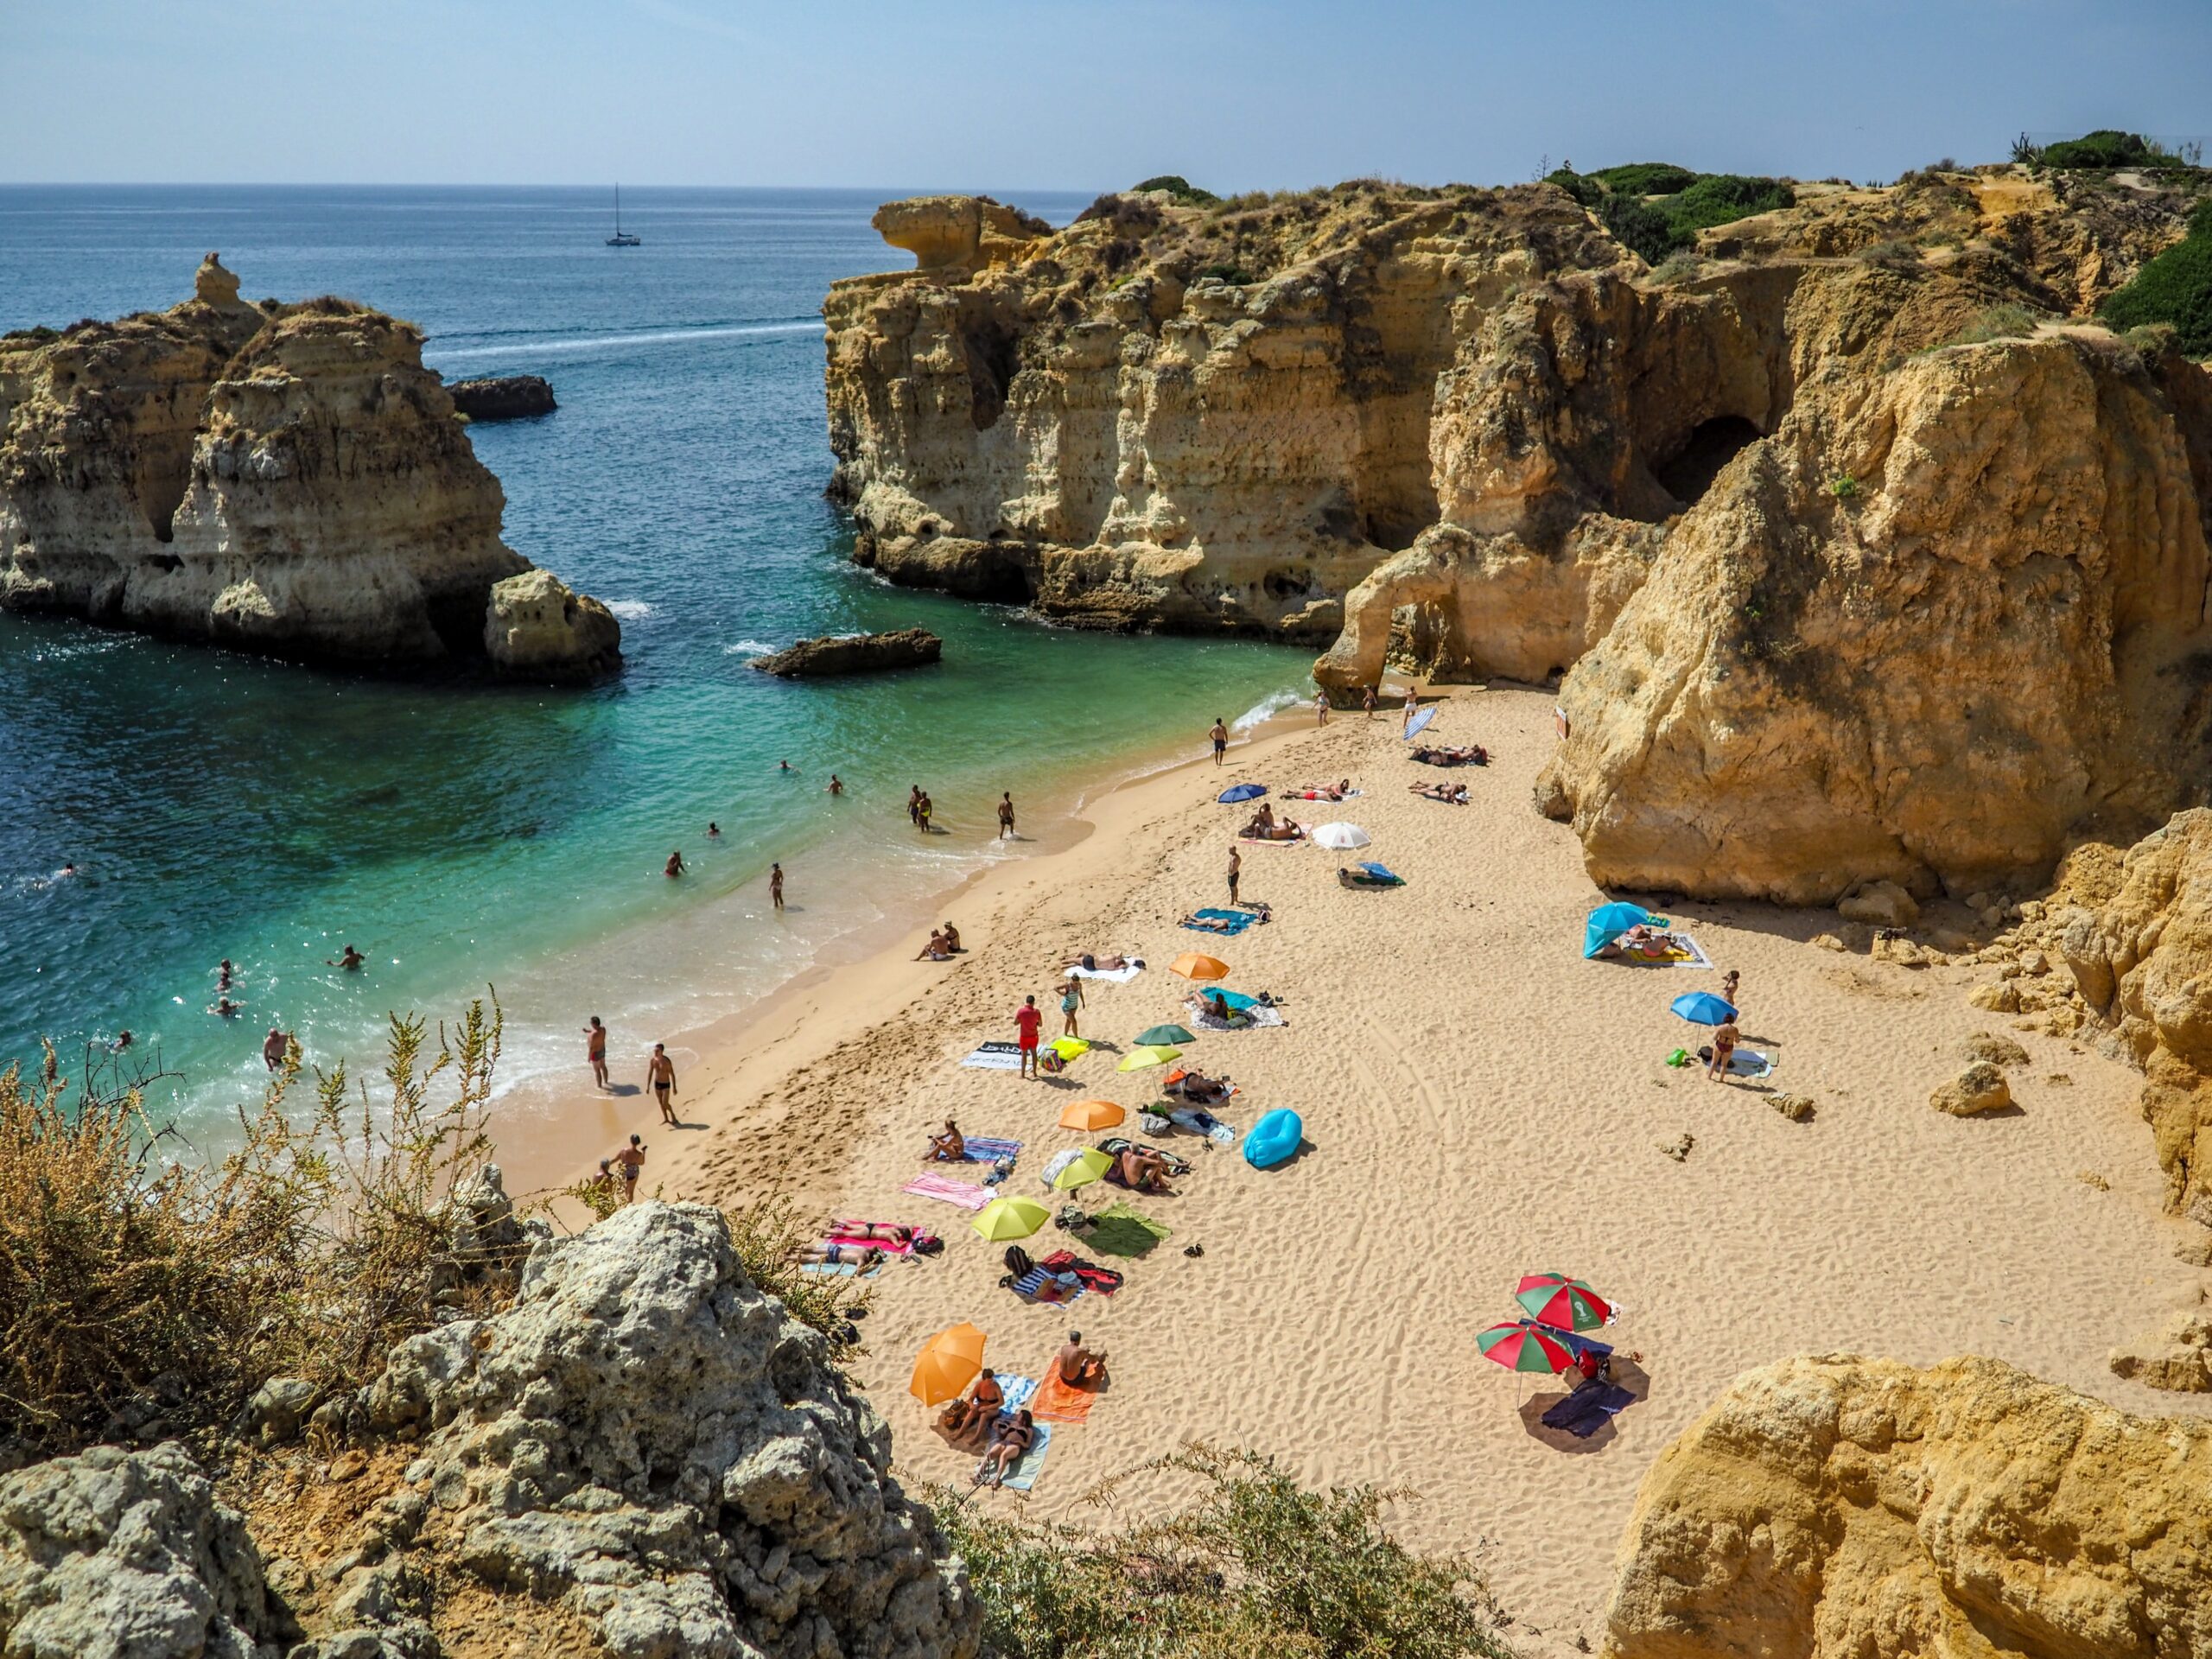 Die Algarve ist ein wunderschönes Reiseziel im August. Auf diesem Bild sieht man eine Bucht mit einem wunderschönen Sandstrand und bunten Sonnenschirmen. 